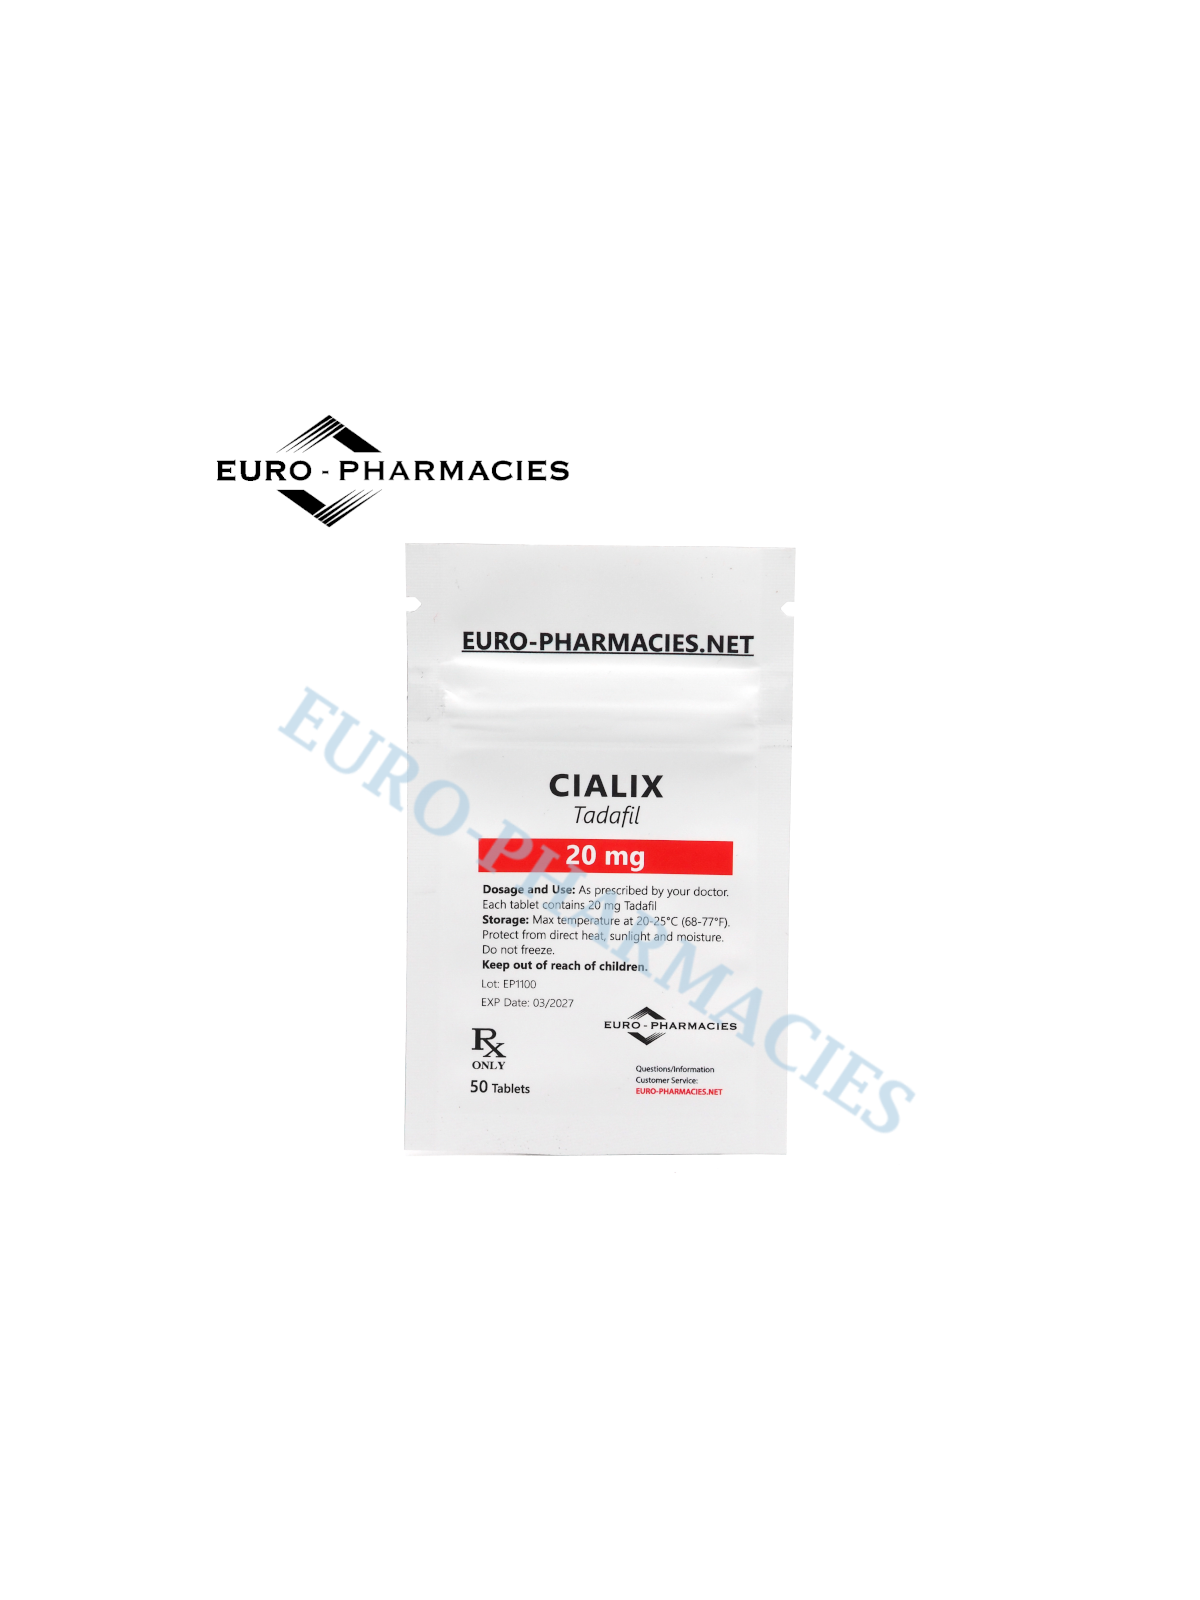 Cialix (Tadafil) - 20mg/tab, 50 pills/bag - Euro-Pharmacies